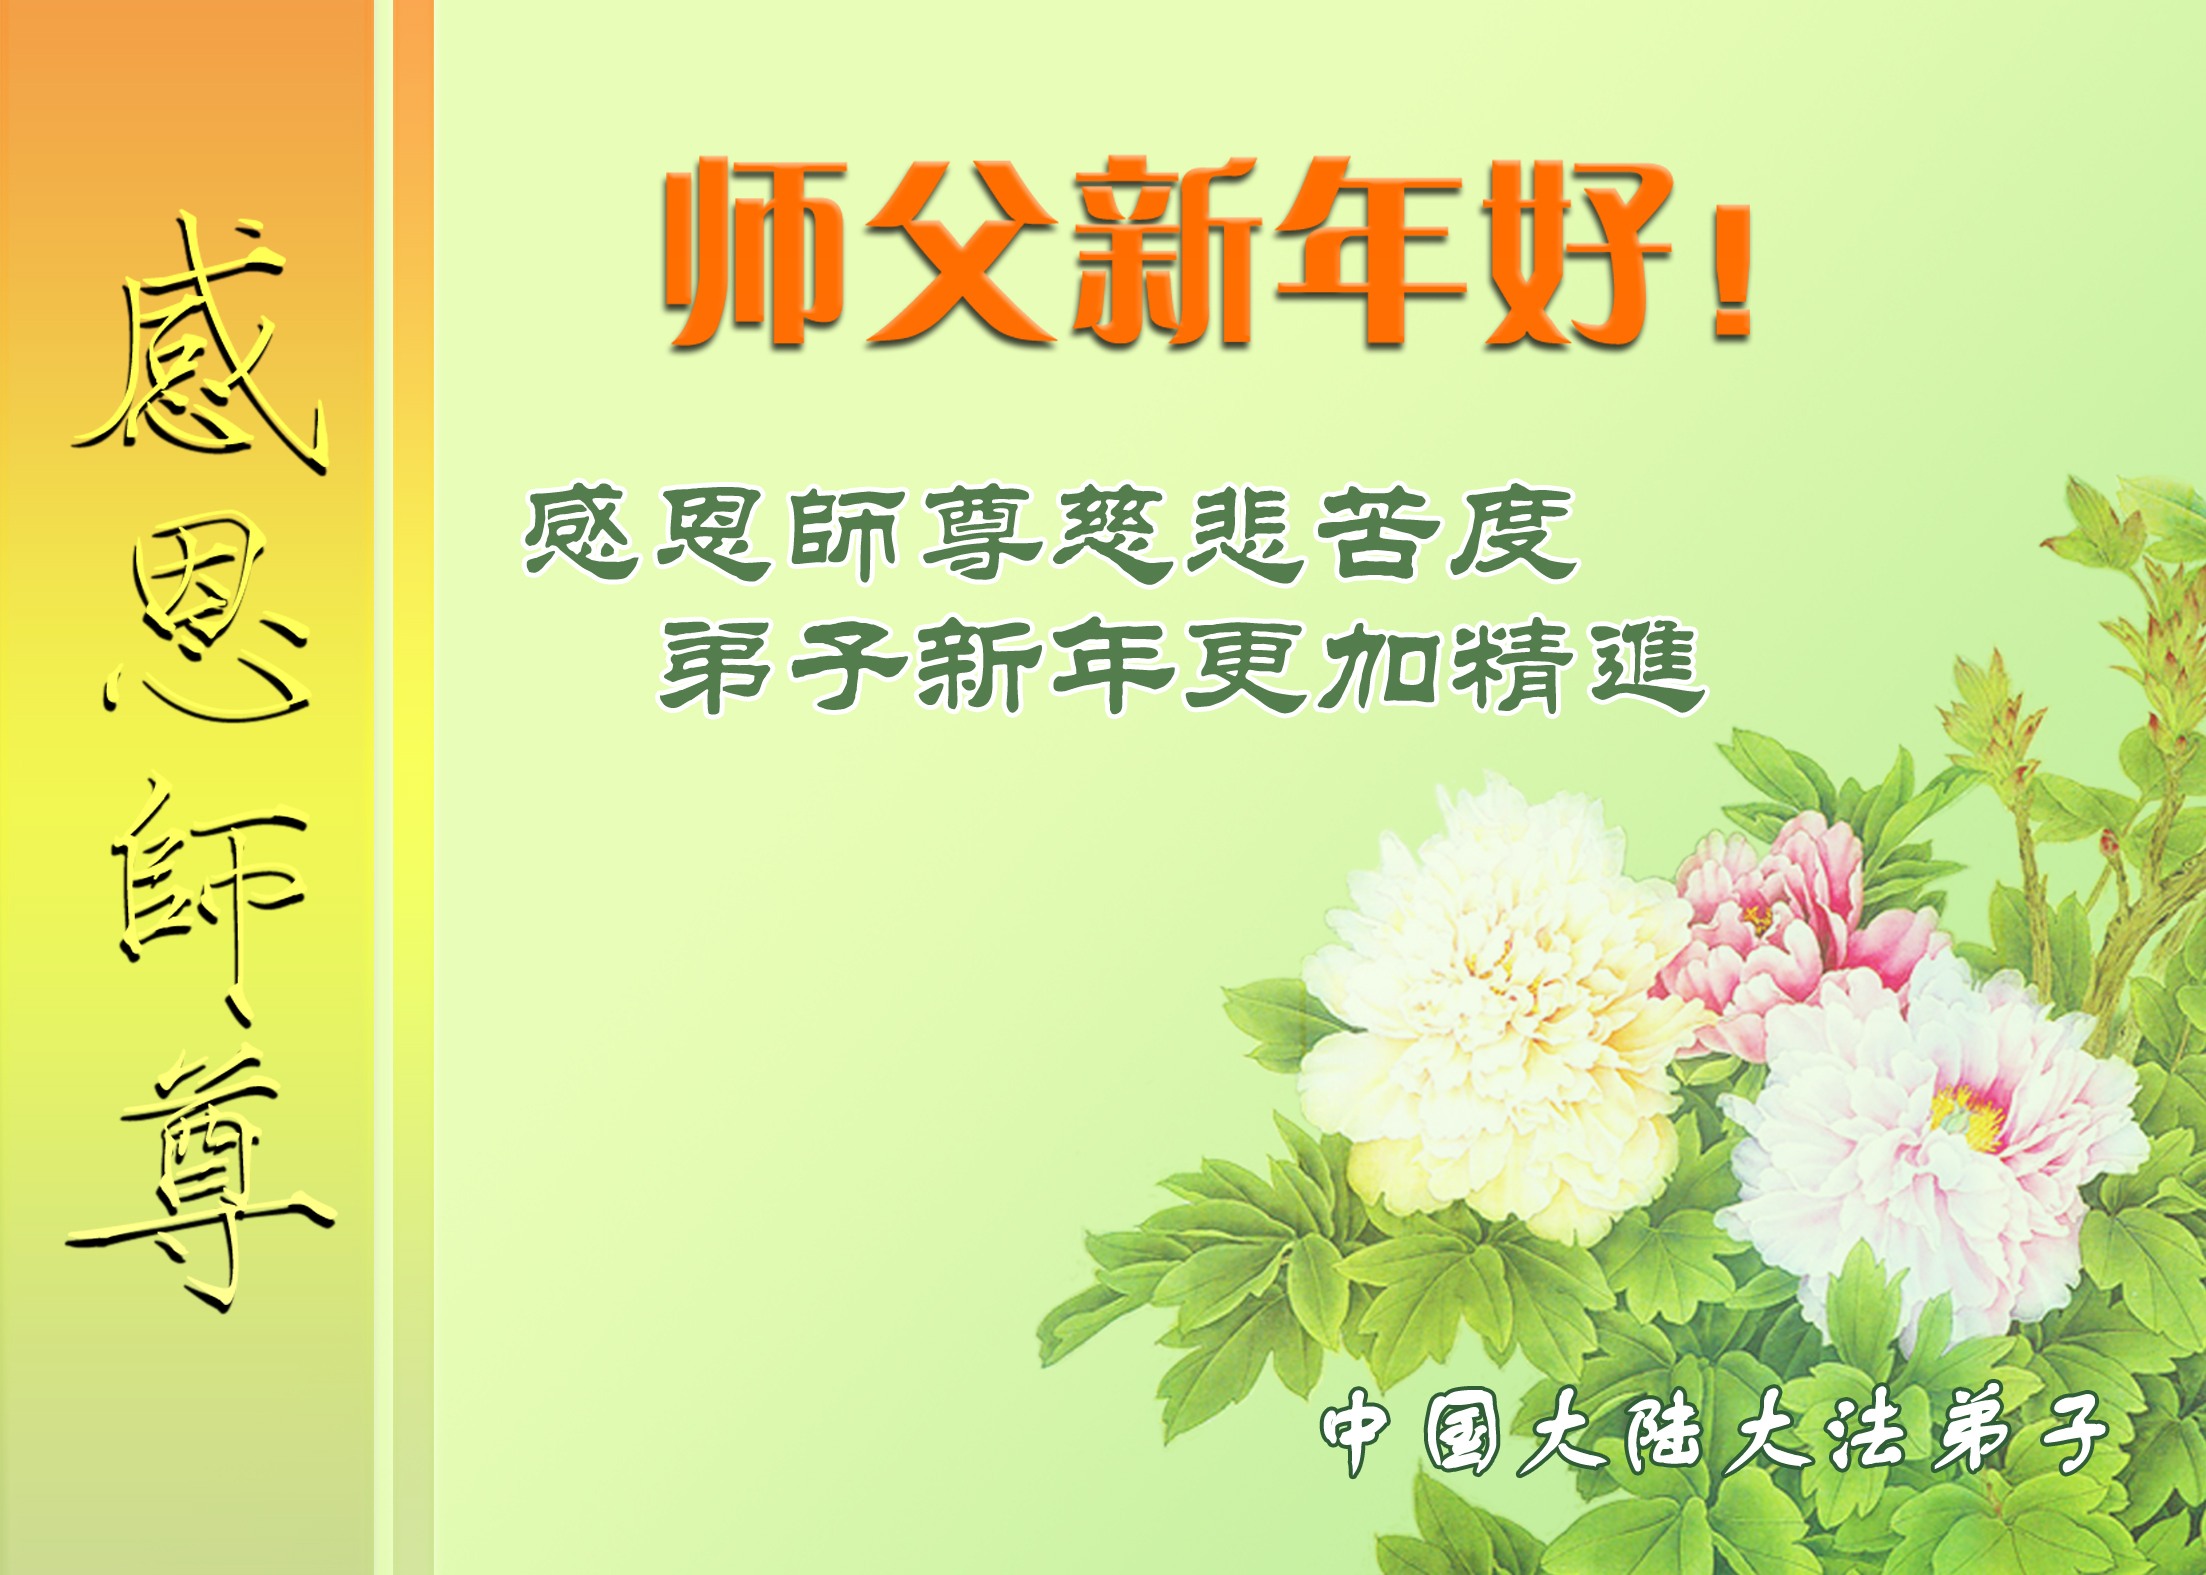 Image for article Практикующие Фалунь Дафа, представляющие более 50 профессий, желают Учителю Ли счастливого Нового года!